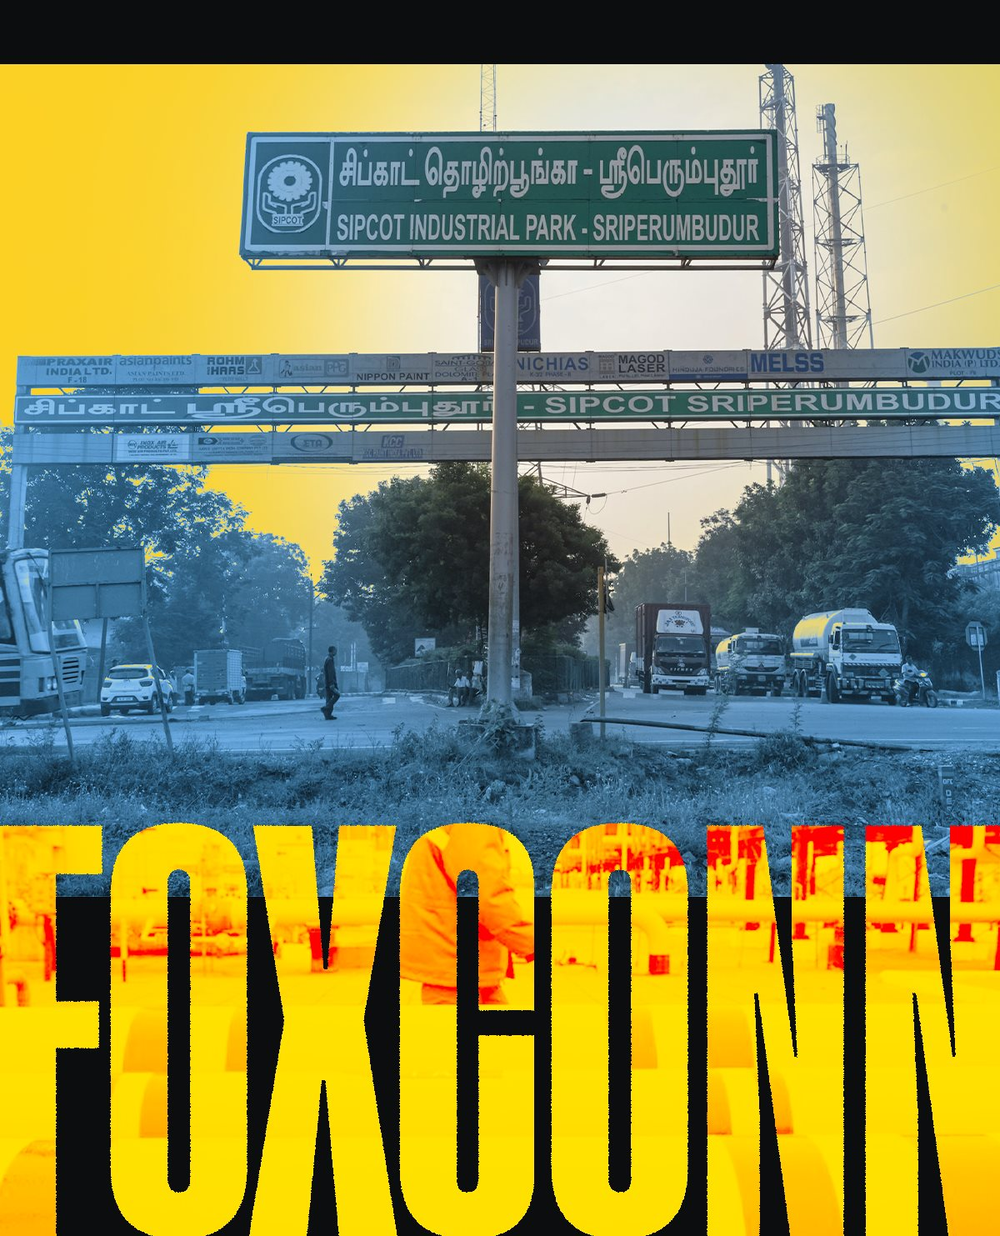 ‘Cú sốc’ văn hóa của Foxconn tại Ấn Độ: Công nhân địa phương khó giao tiếp, ghét chịu áp lực, kỹ sư nước ngoài phải ăn KFC, McDonalds vì không hợp khẩu vị - Ảnh 2.